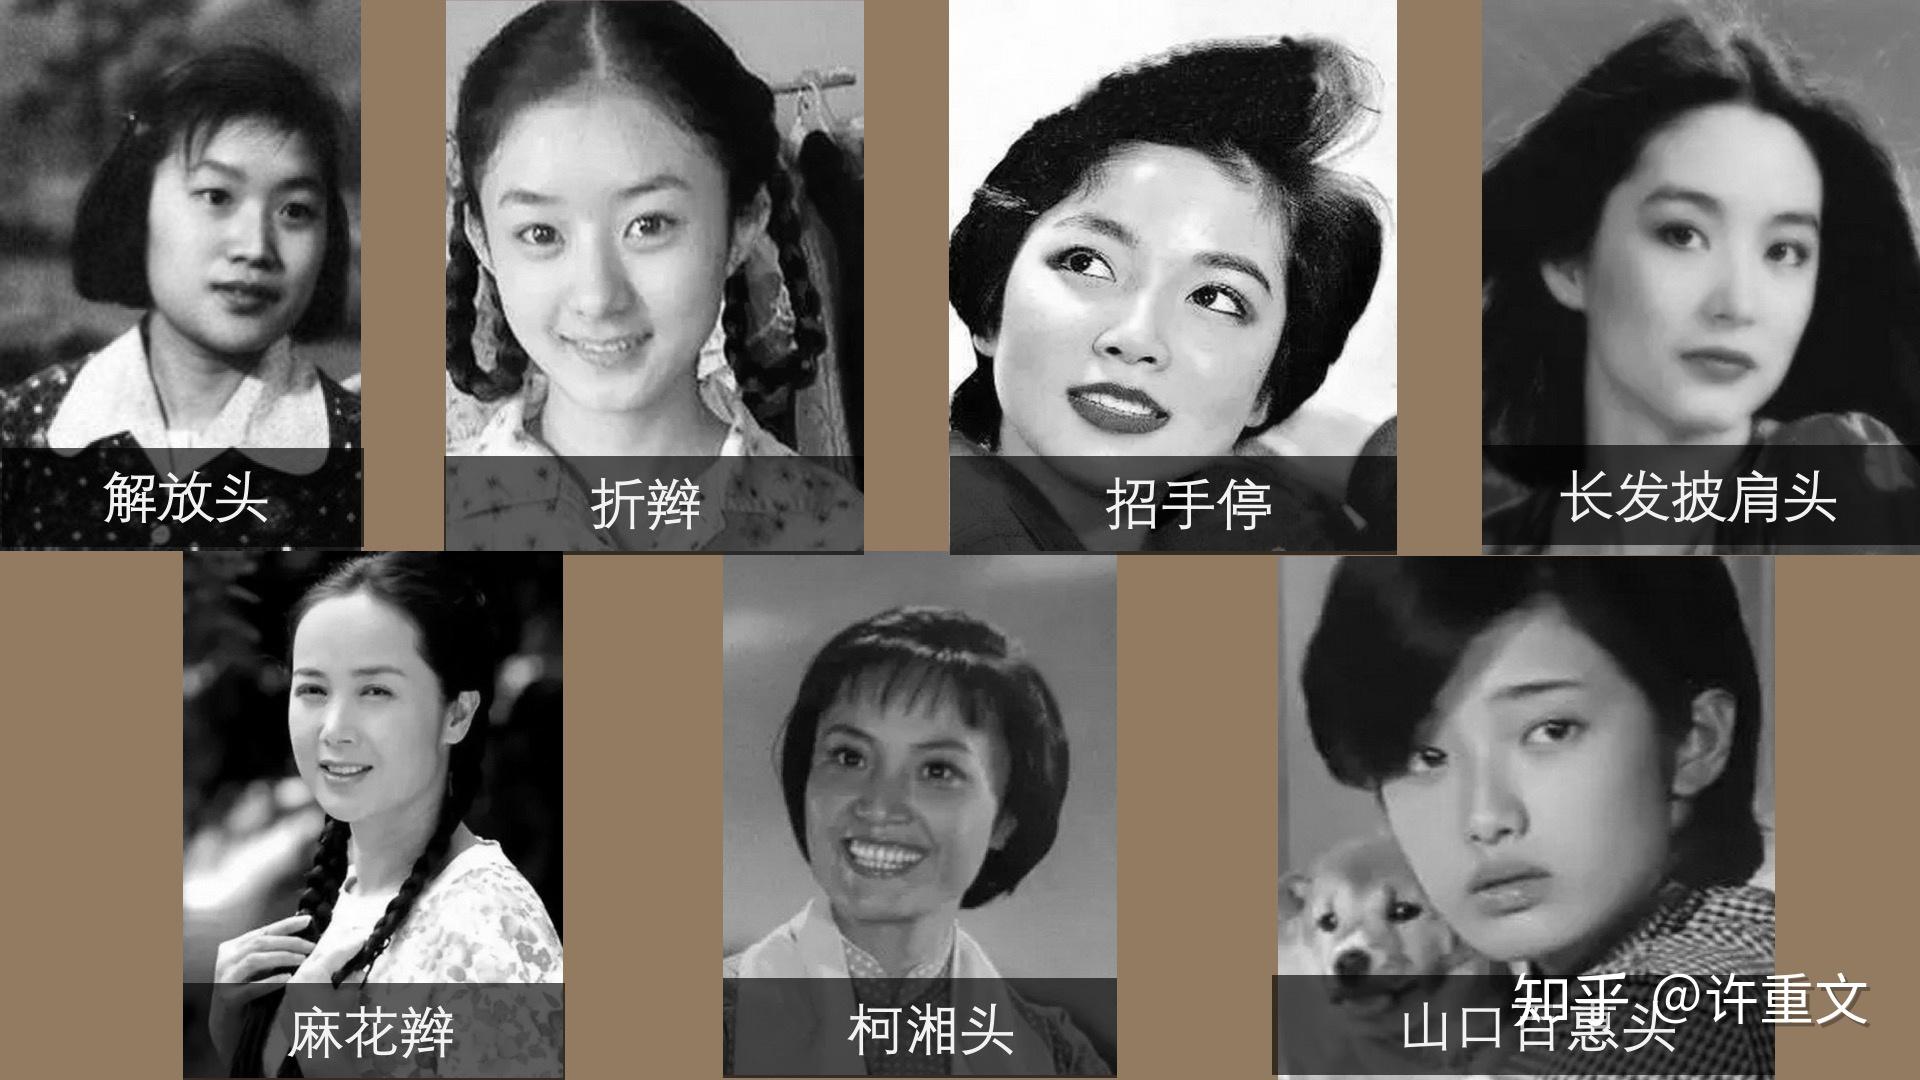 来看一下,从解放初期到90年代初,中国女性的发型变化,有没有勾起一些